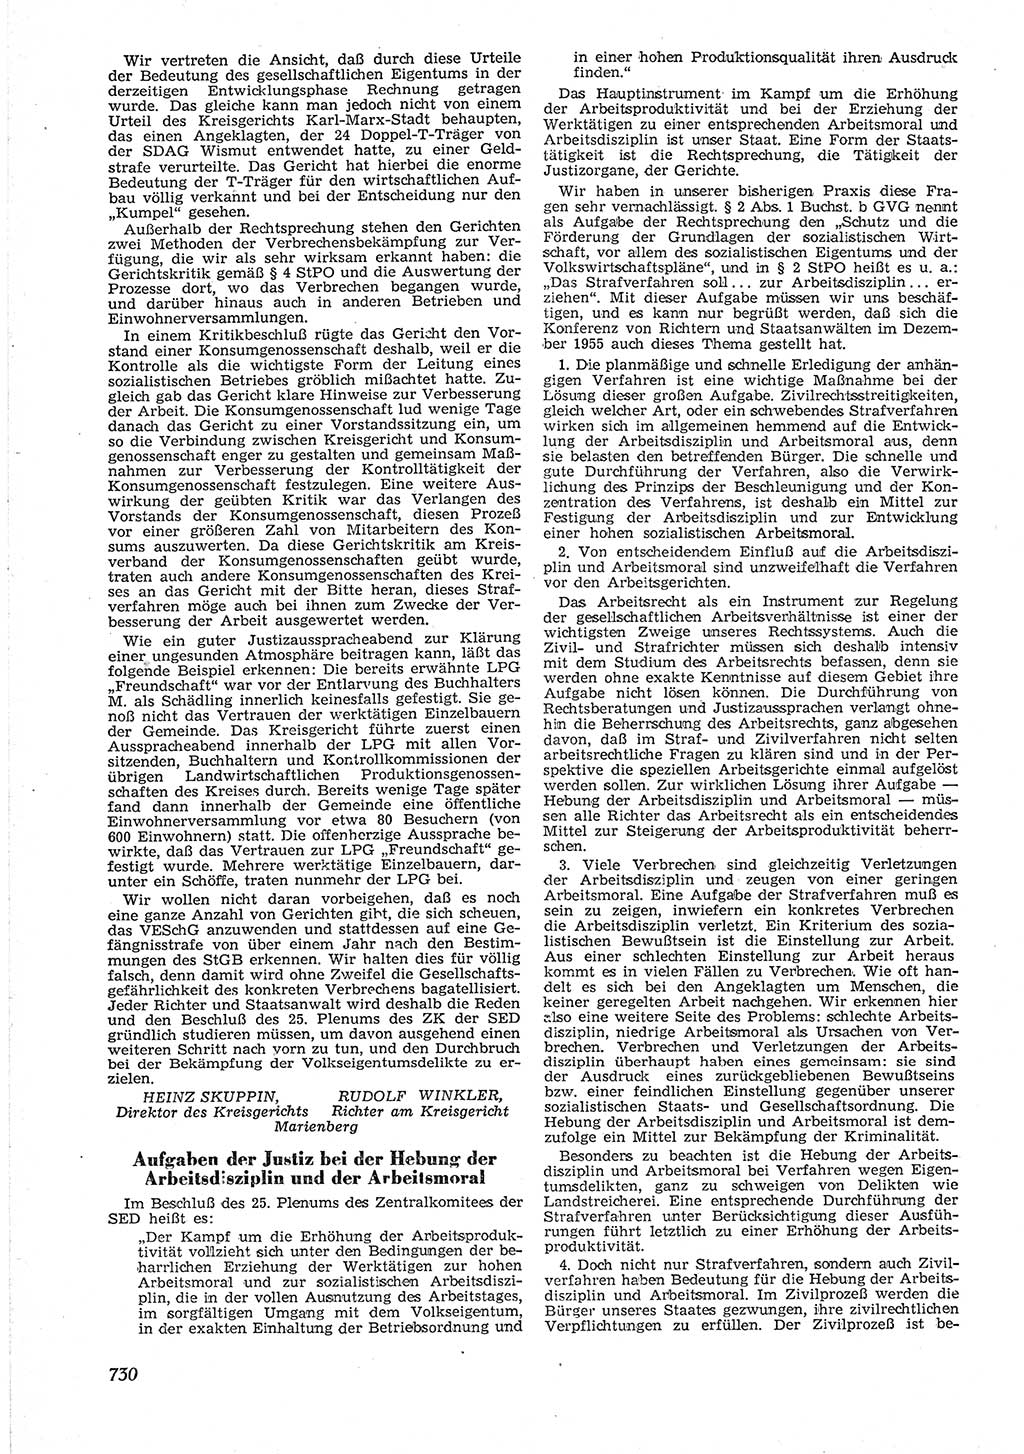 Neue Justiz (NJ), Zeitschrift für Recht und Rechtswissenschaft [Deutsche Demokratische Republik (DDR)], 9. Jahrgang 1955, Seite 730 (NJ DDR 1955, S. 730)